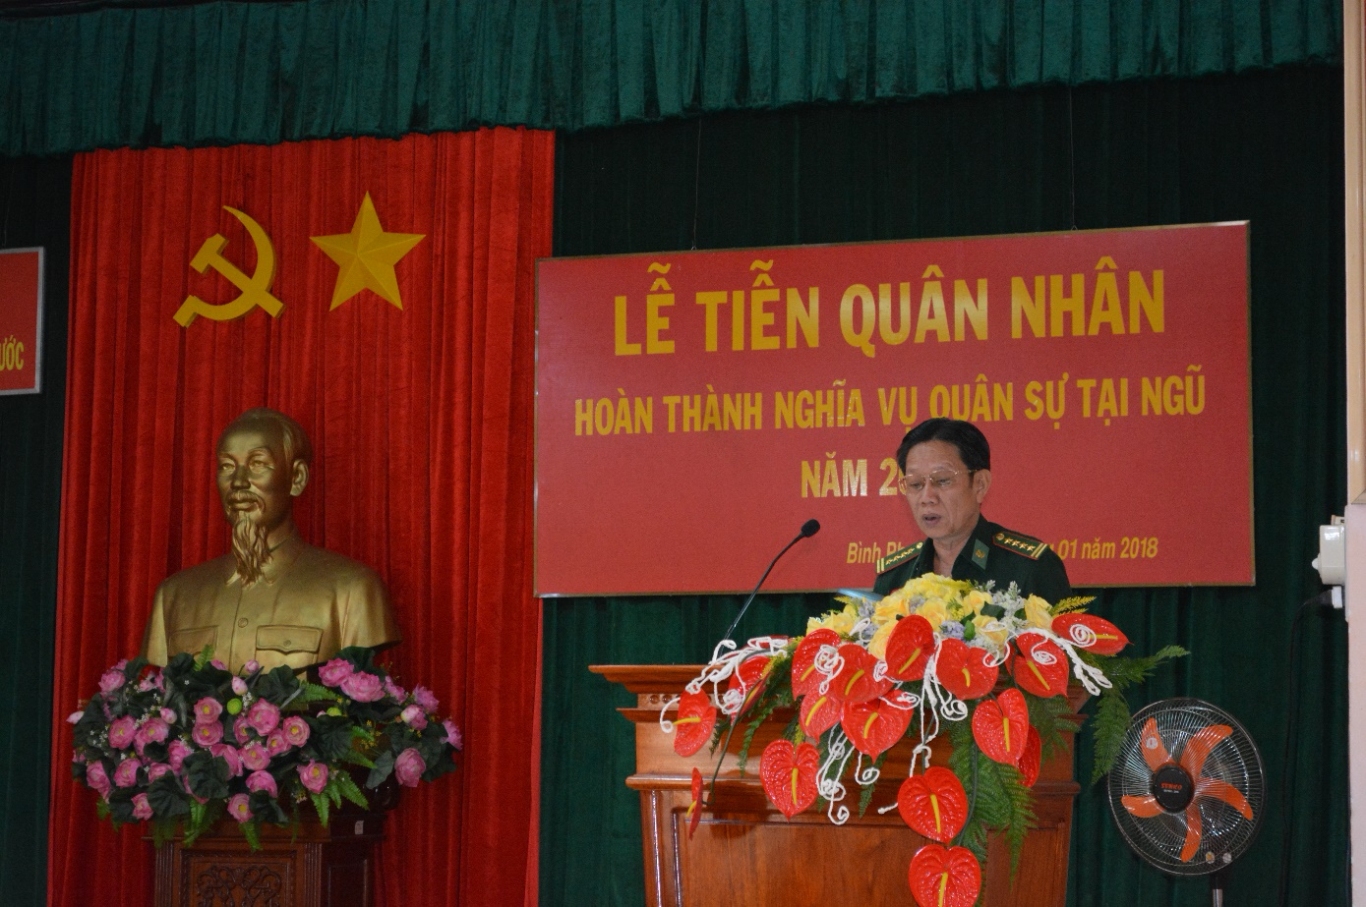 Đại tá Nguyễn Văn Liên, Tỉnh ủy viên – Chỉ huy trưởng BĐBP tỉnh phát biểu tại buổi Lễ